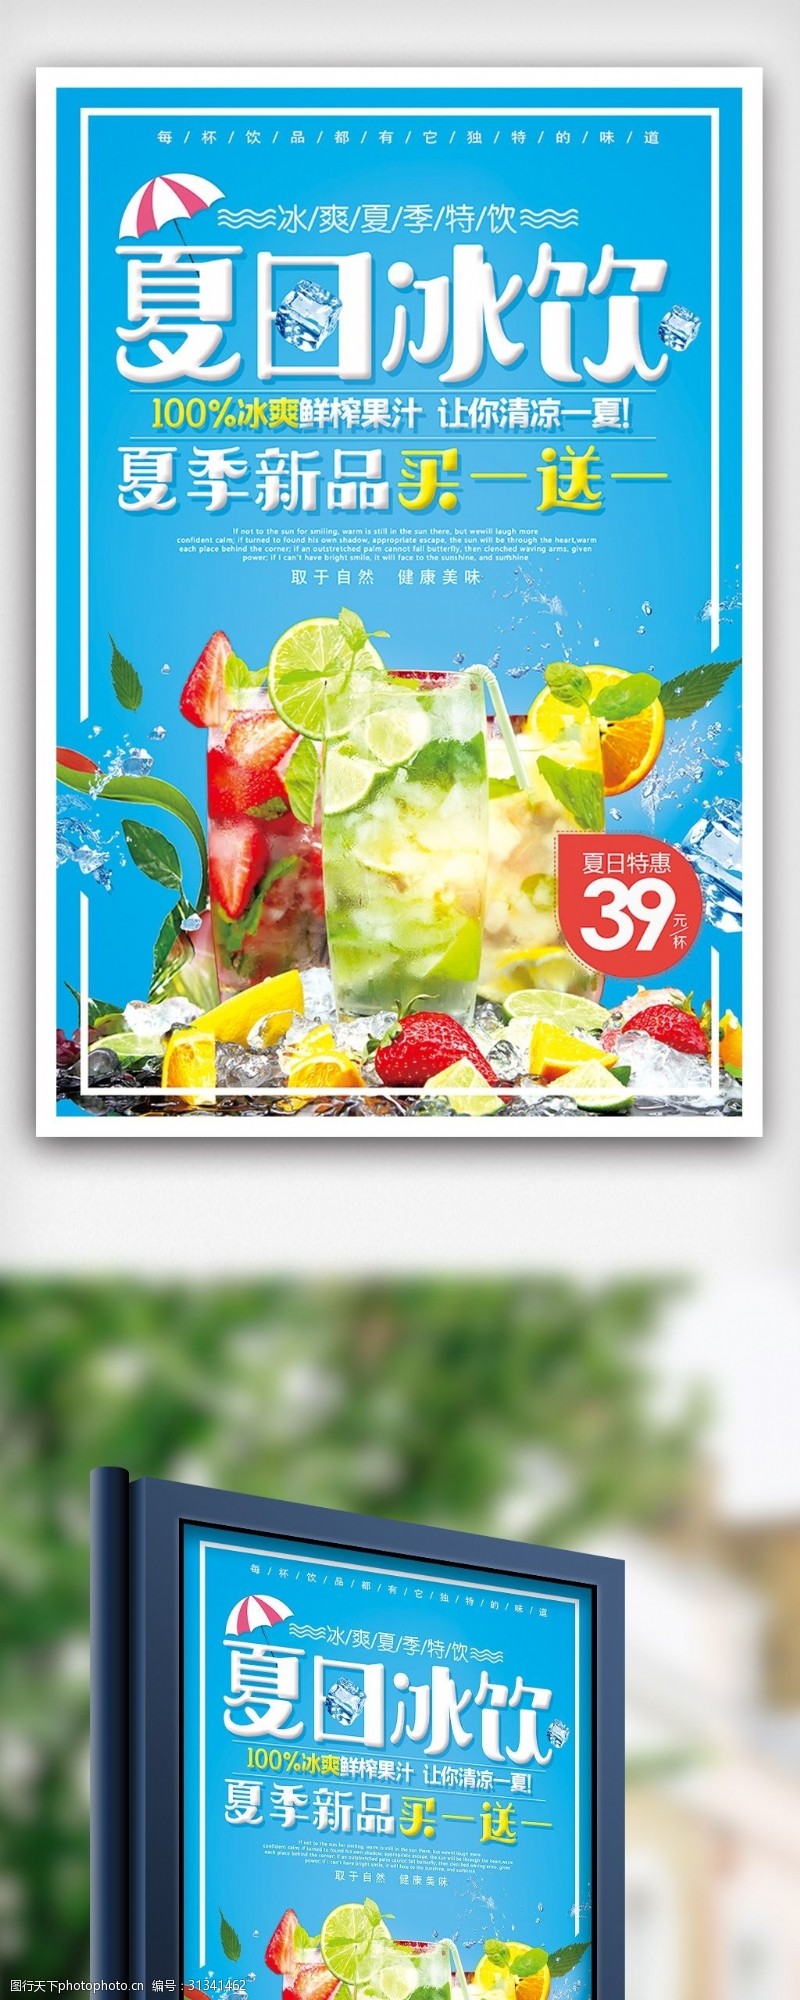 饮料图片免费下载夏日冰爽特饮买一送一夏季饮料海报